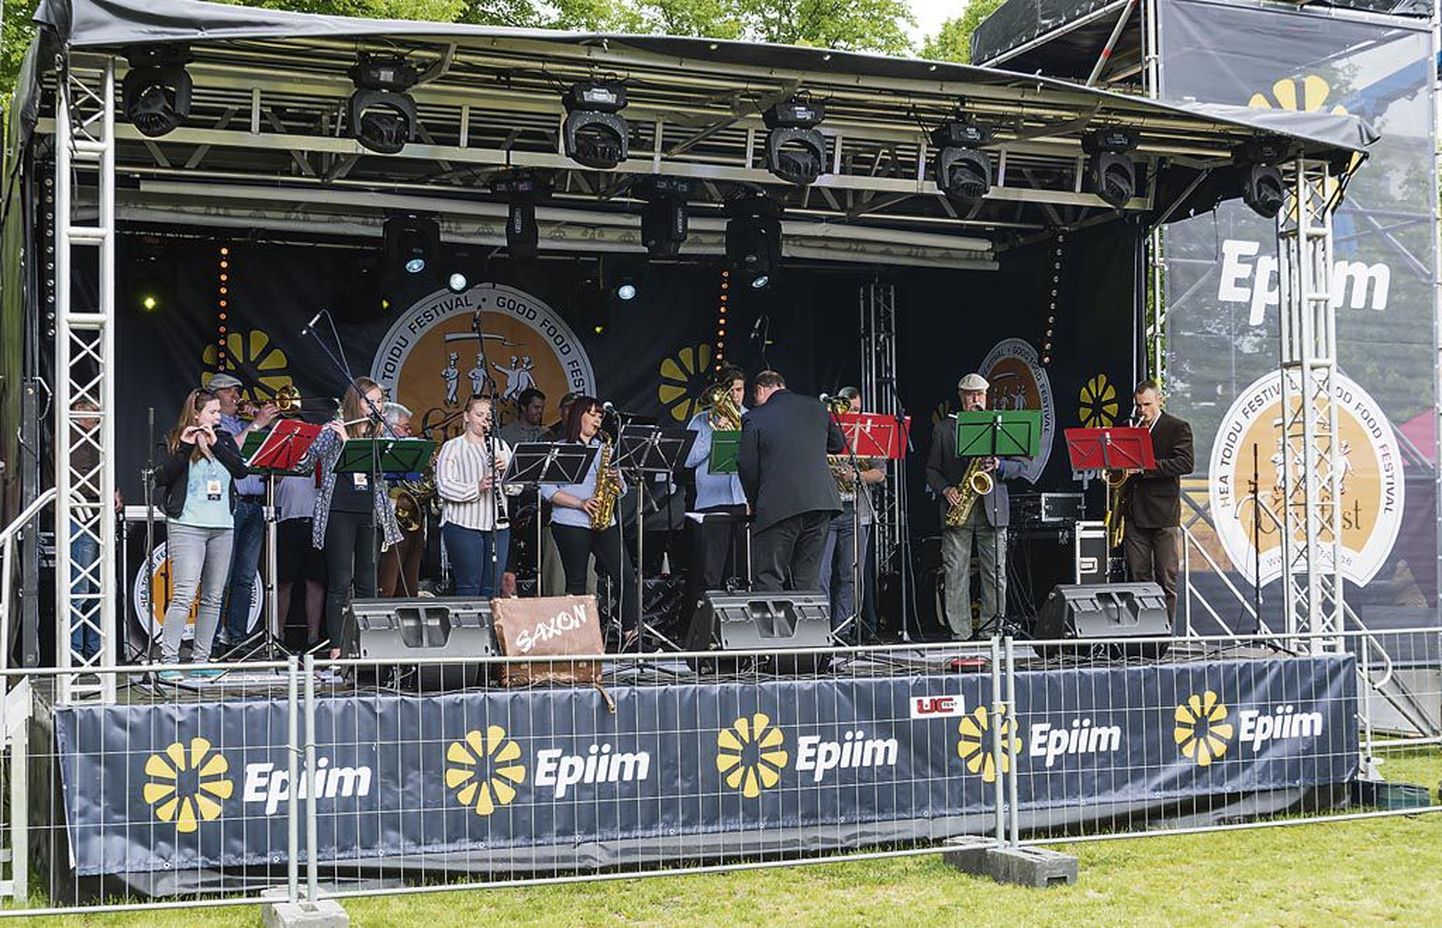 Valdadele ostetud lava kerkib alatasa Pärnu linnas toimuvatel üritustel. Üks selline on Grillfest, mille korraldusmeeskonnas Hirvela on.